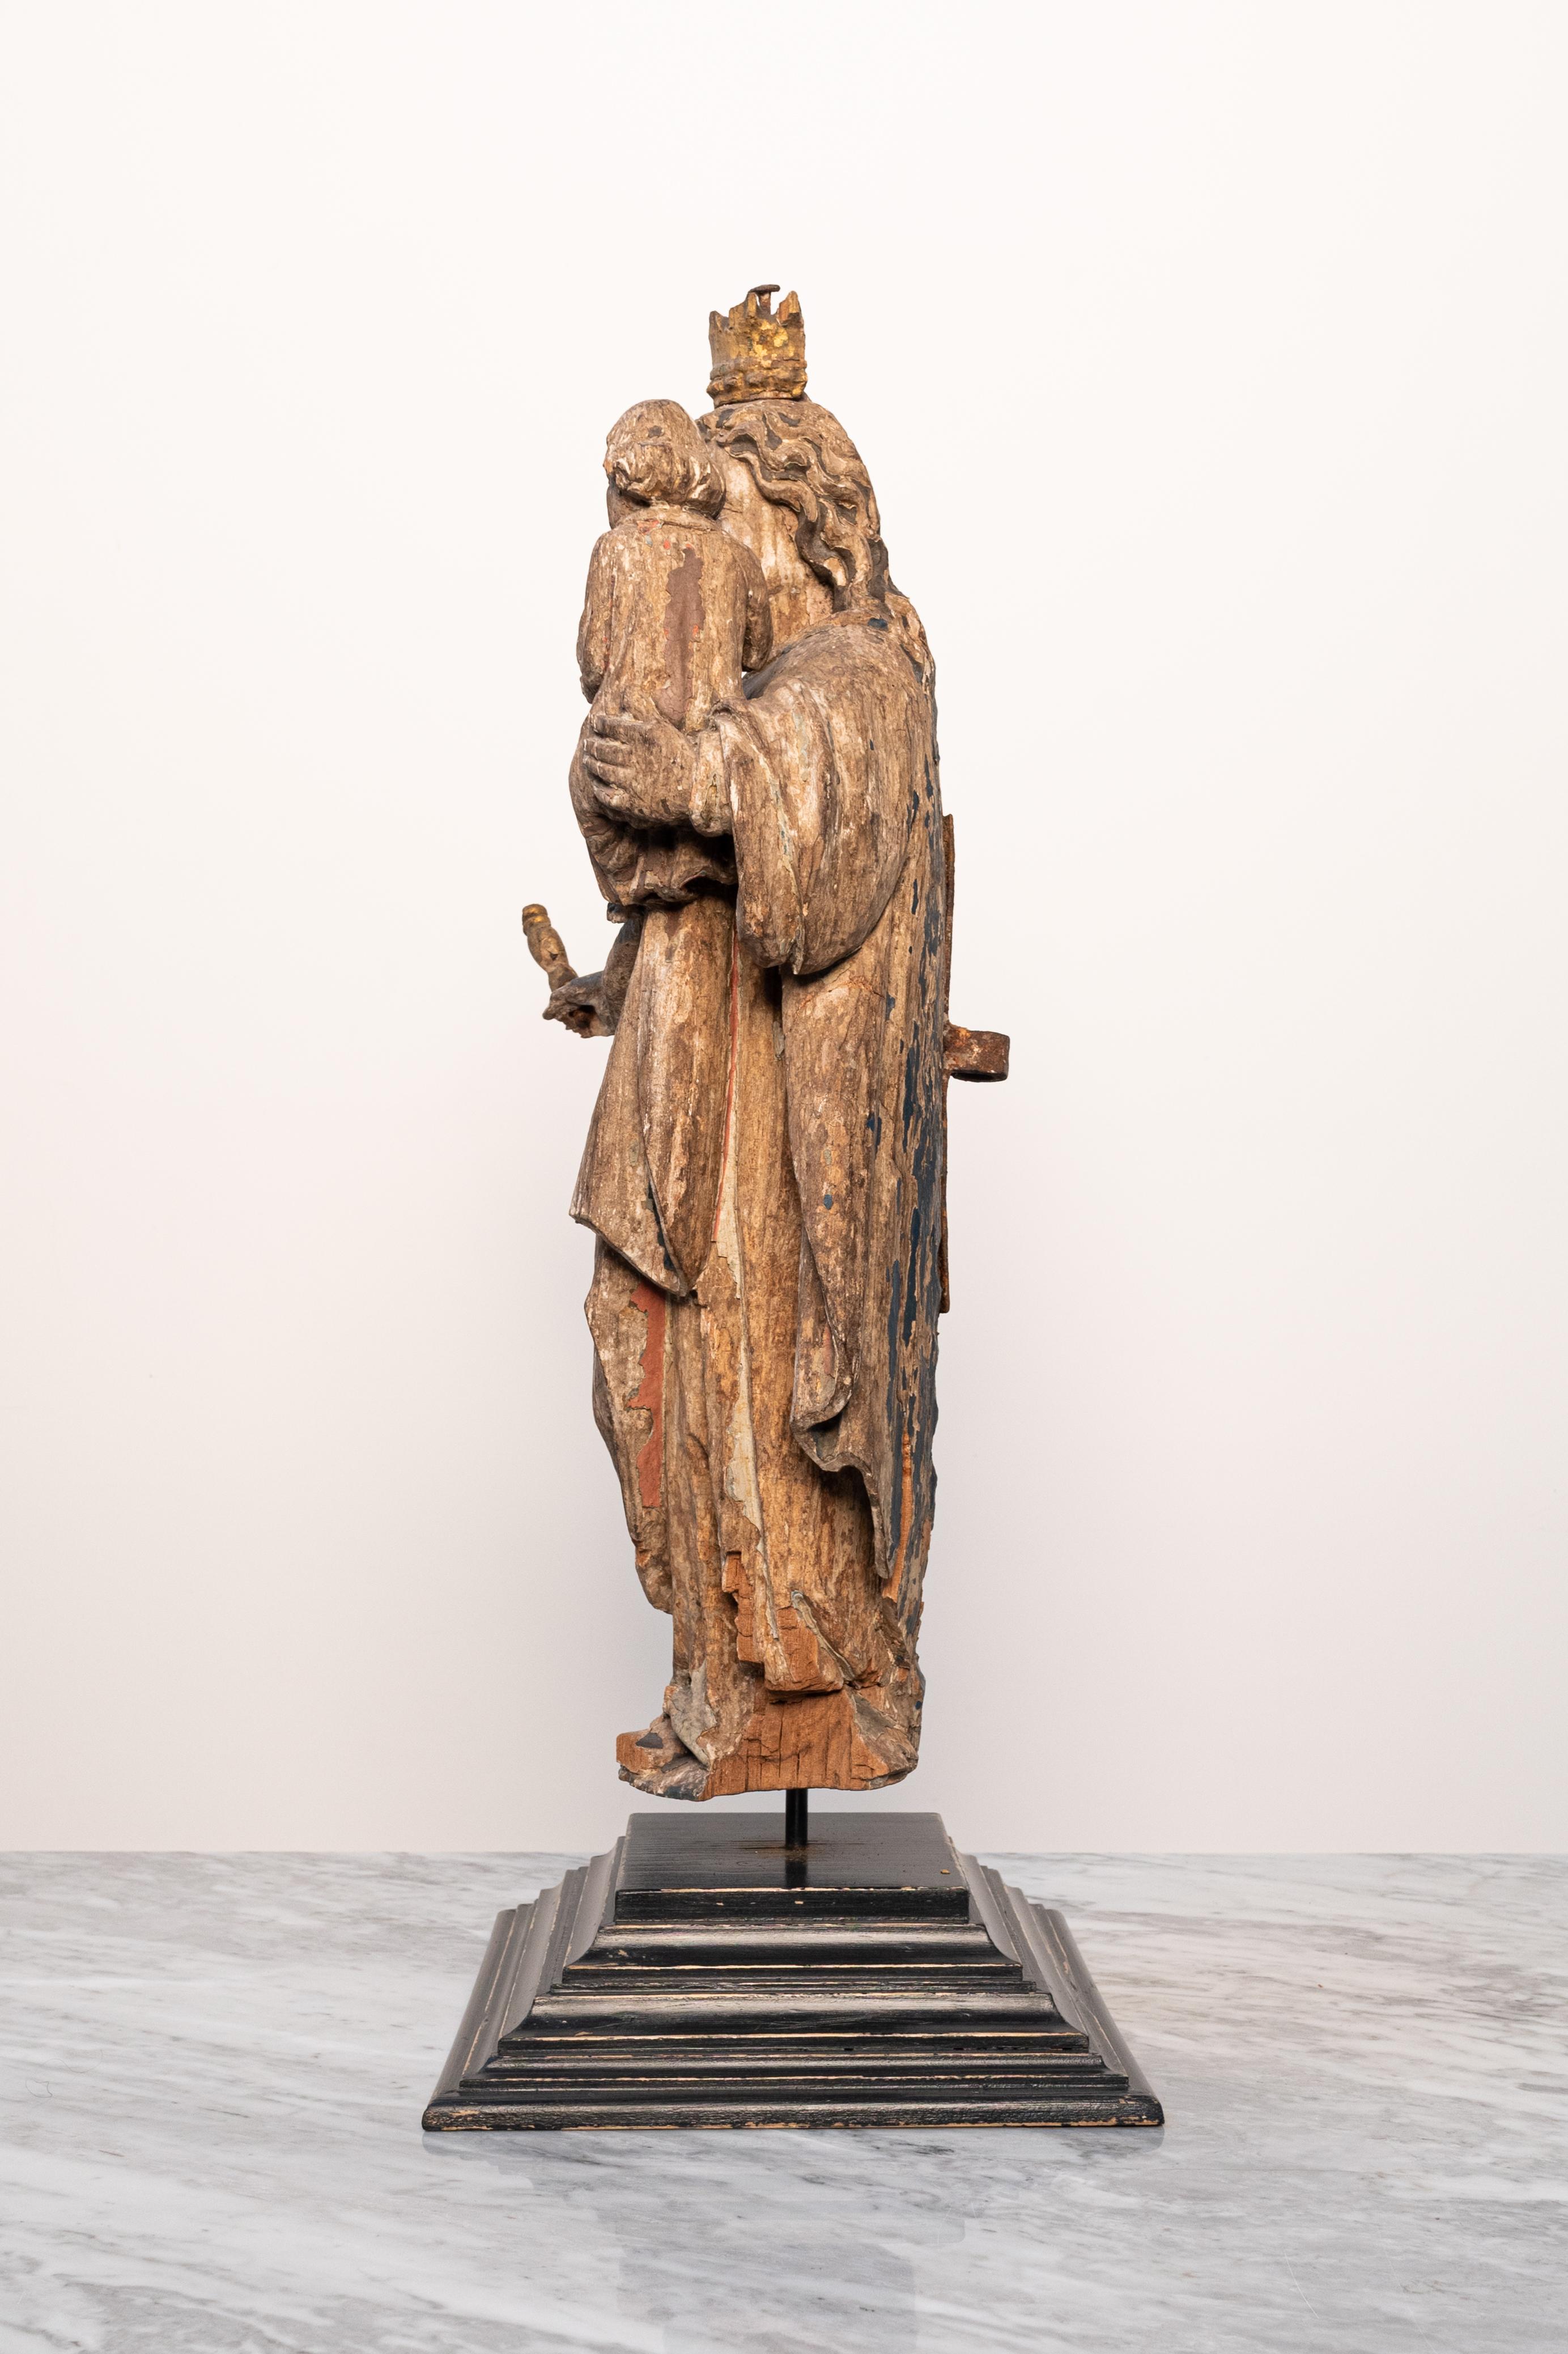 Diese handgeschnitzte mehrfarbige Holzstatue der Jungfrau Maria aus dem 16. Jahrhundert stammt aus einer Kirche in Sint-Niklaas, Belgien (Europa), und wurde direkt vom Sakristan der Kirche gekauft. 

Sie ist aus Nussbaumholz gefertigt und ihr Mantel